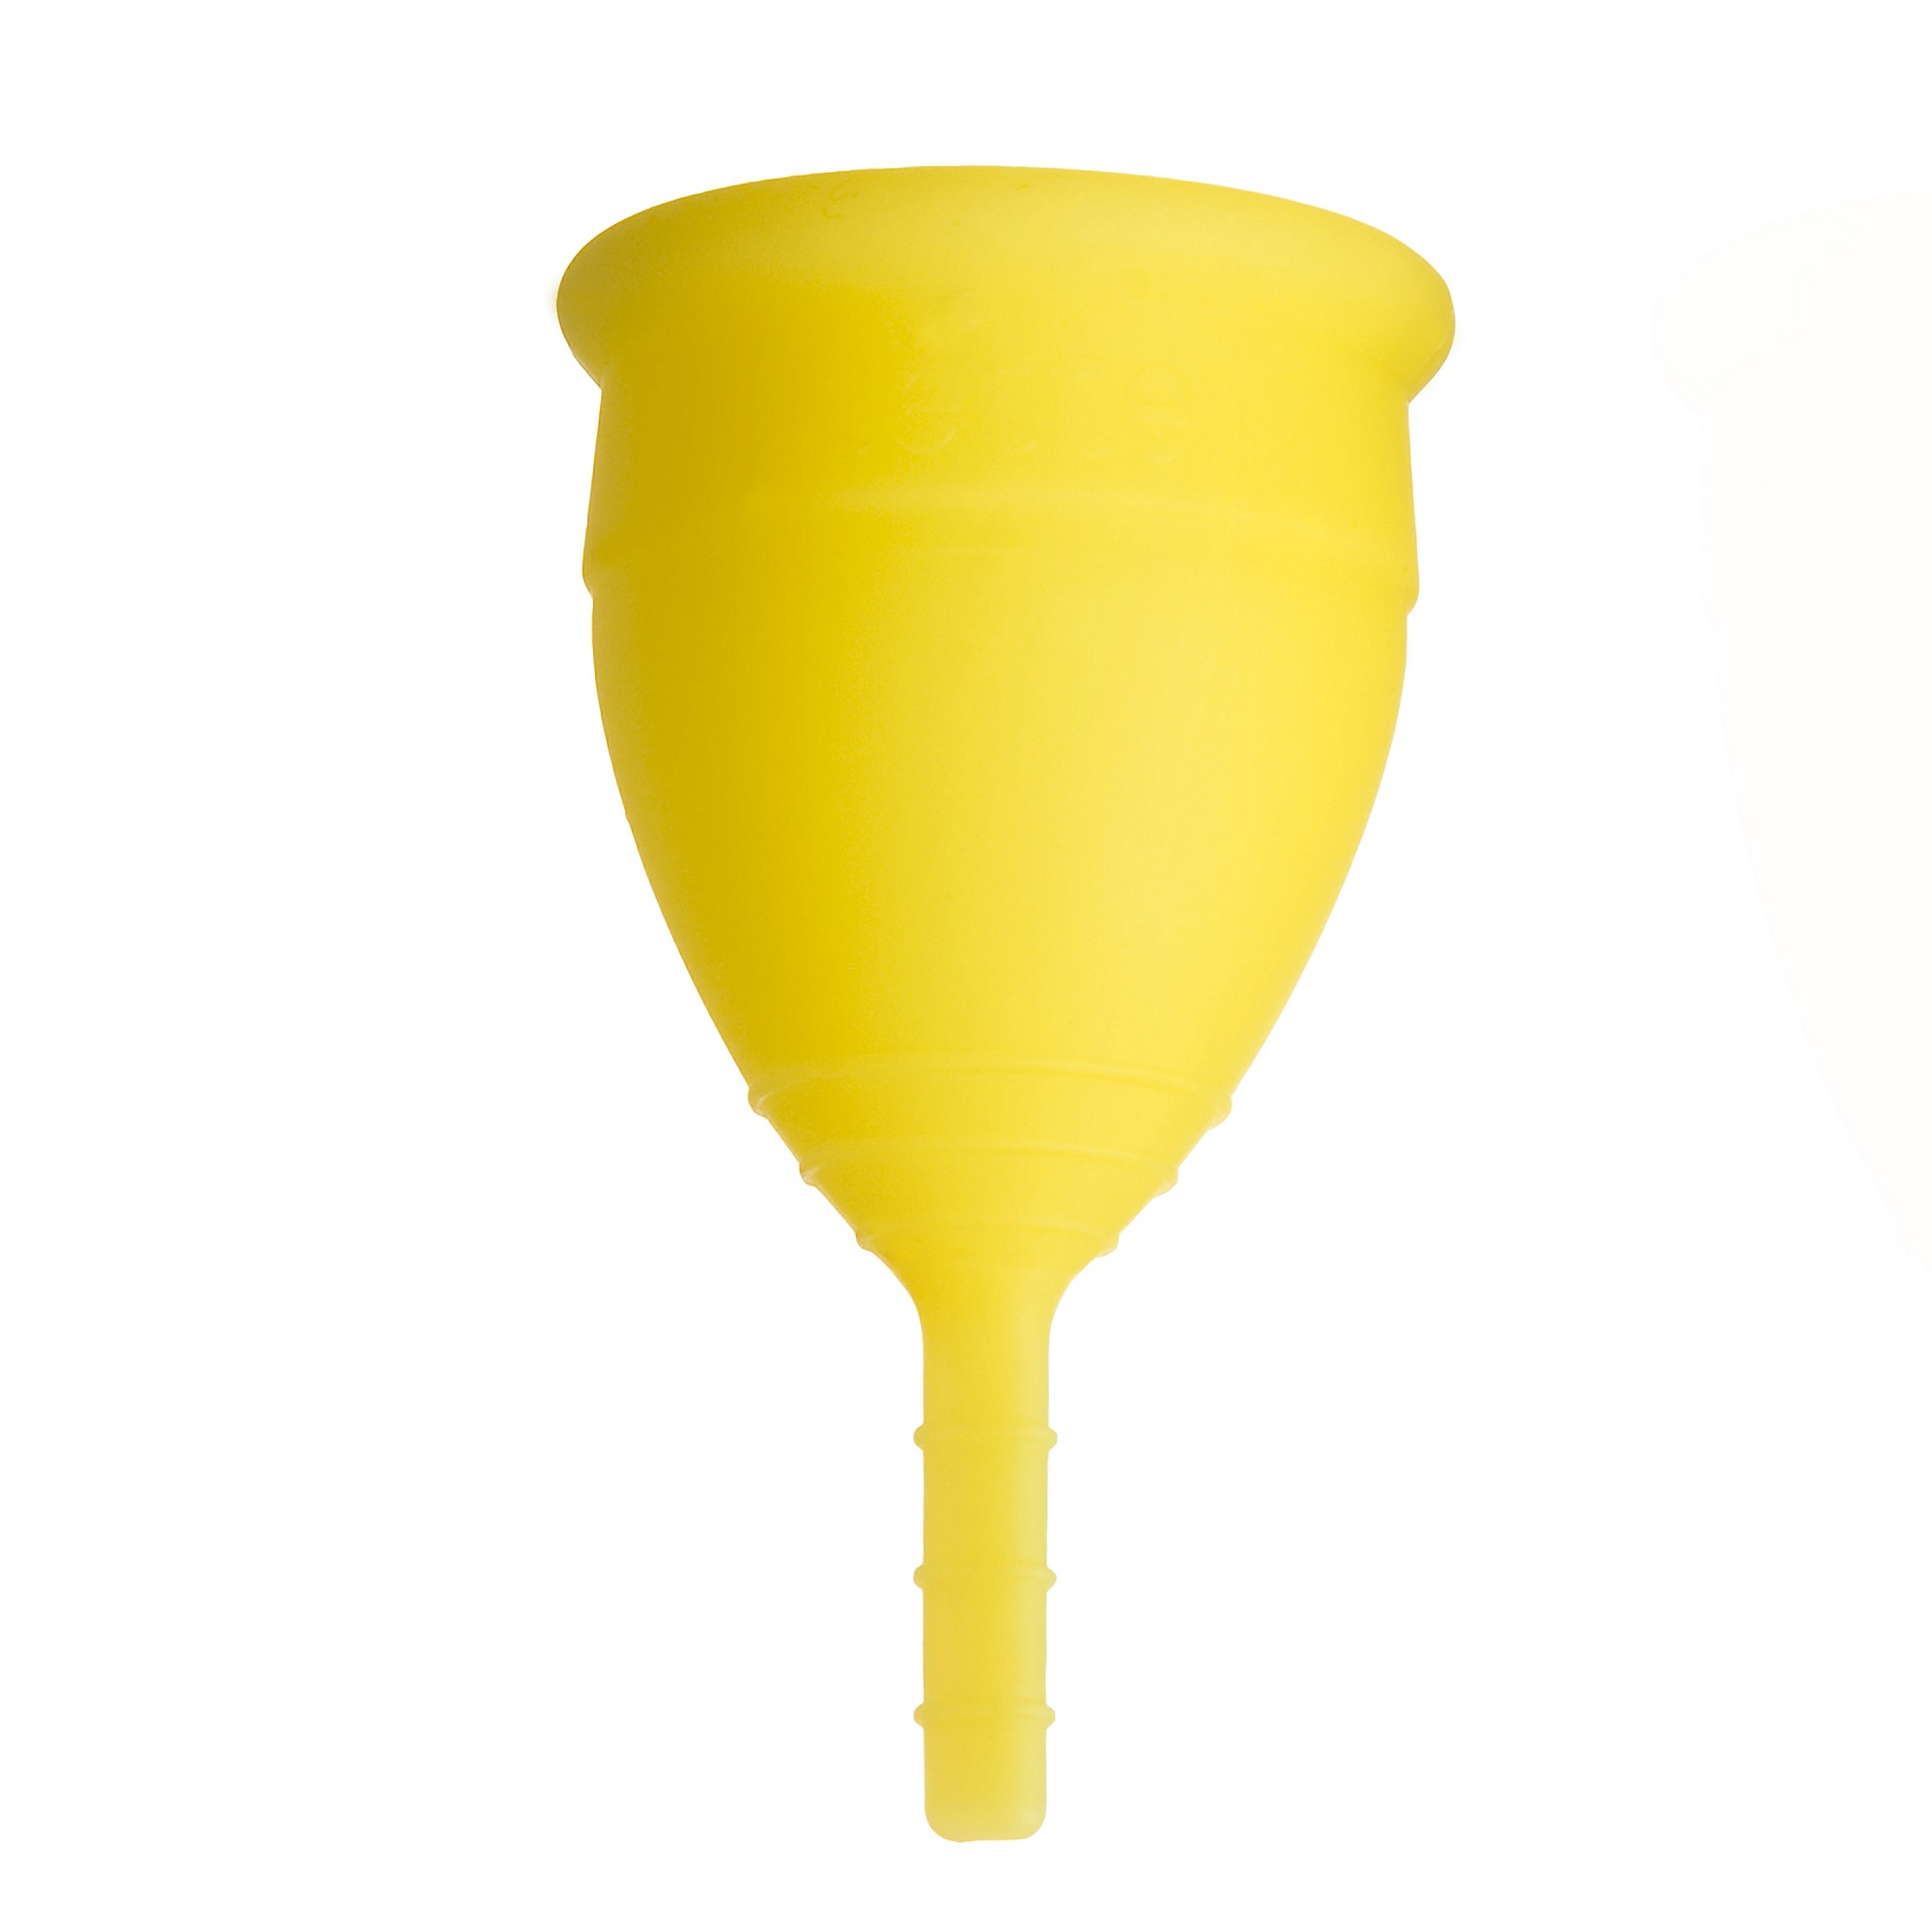 Менструальная чаша Lunette желтая Model 1 - фото 2